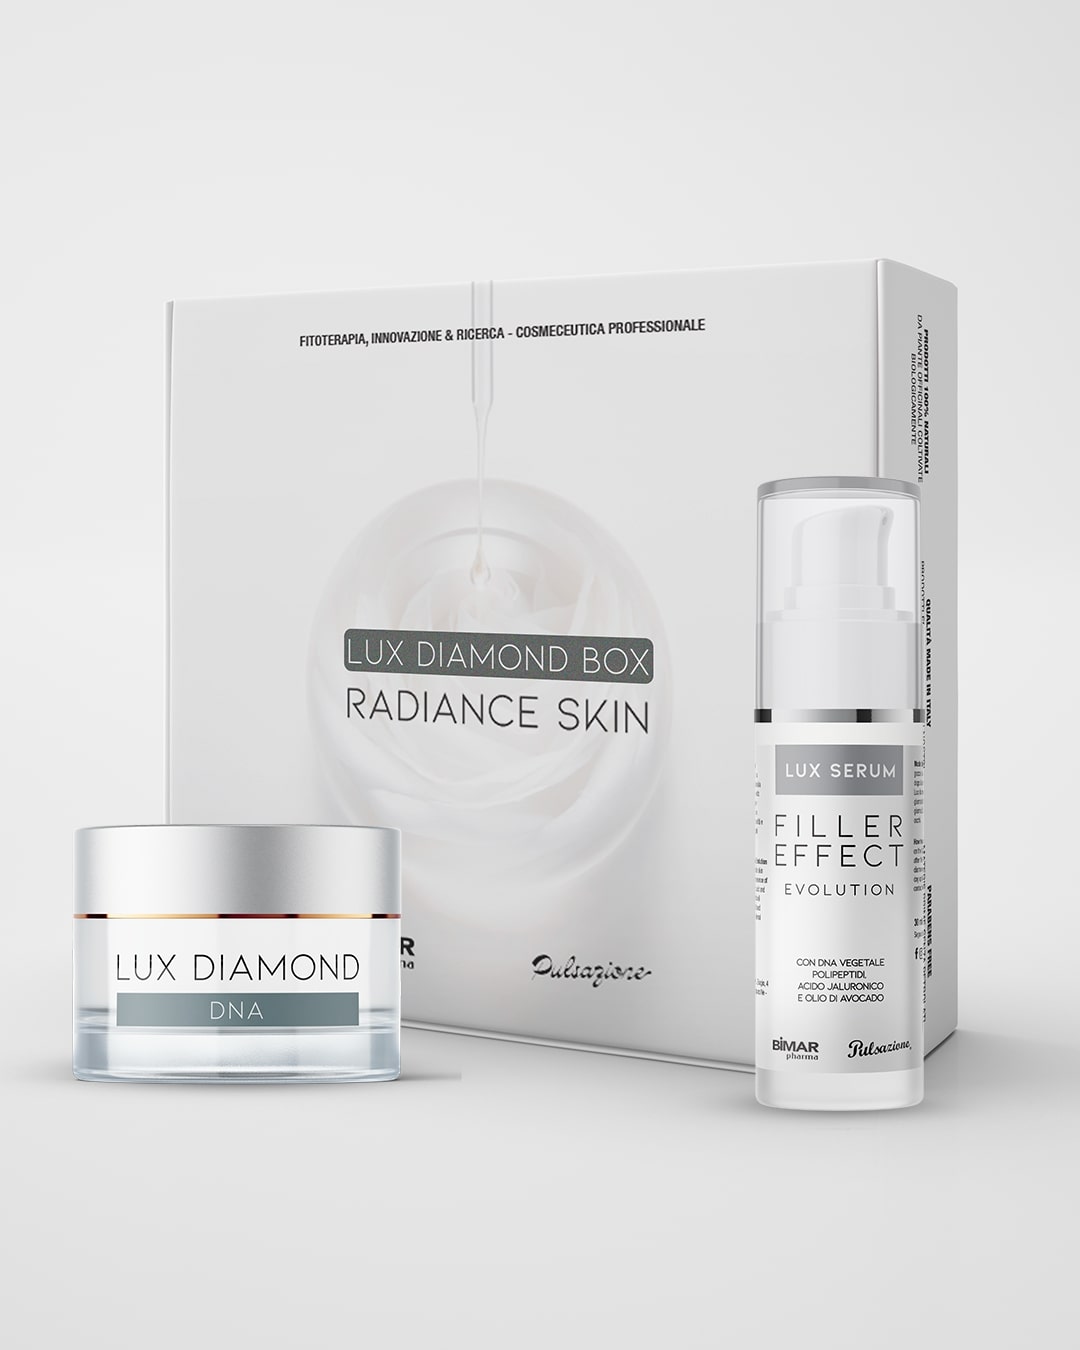 Lux Diamond Box - Trattamento completo curativo anti-age illuminate - Bimar Pharma Shop